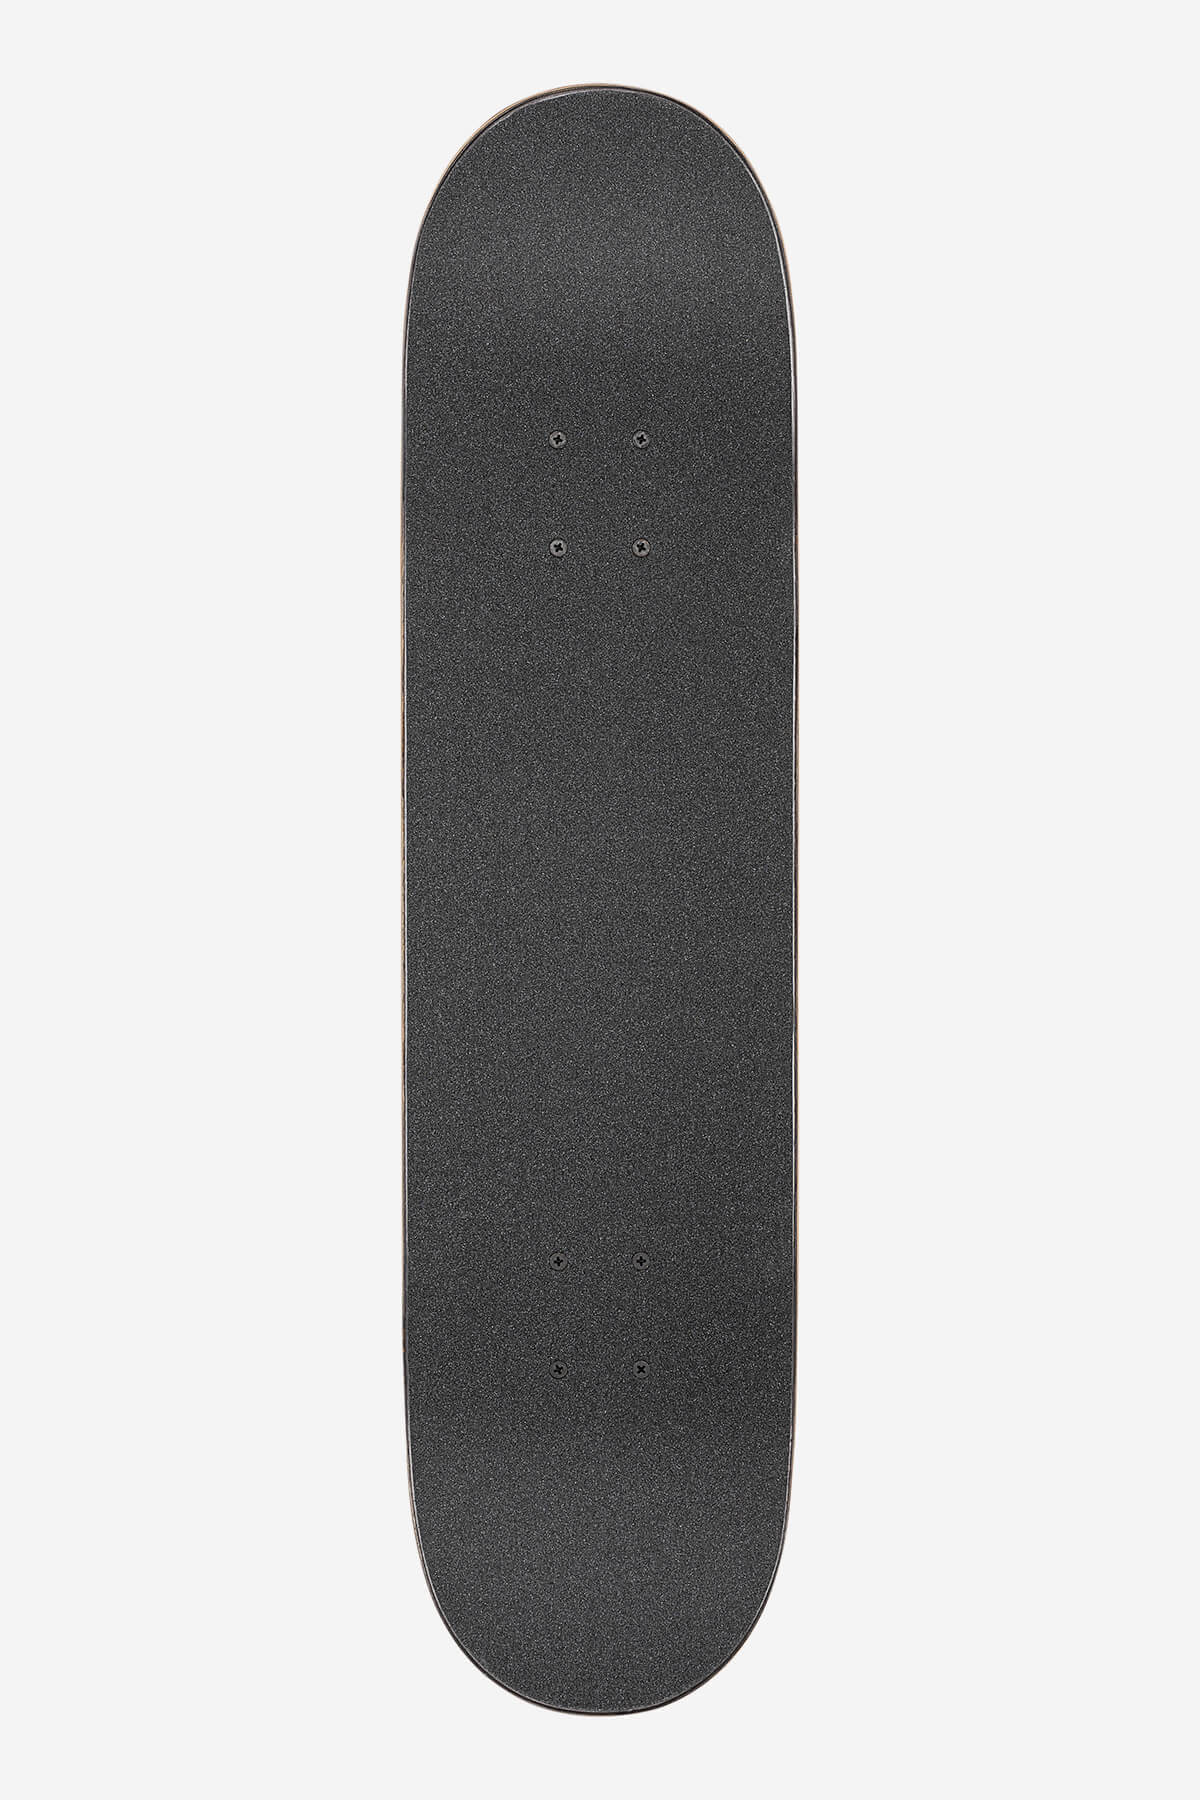 Globe - G1 Ablaze - Tie Dye - 7.75" Komplett Skateboard